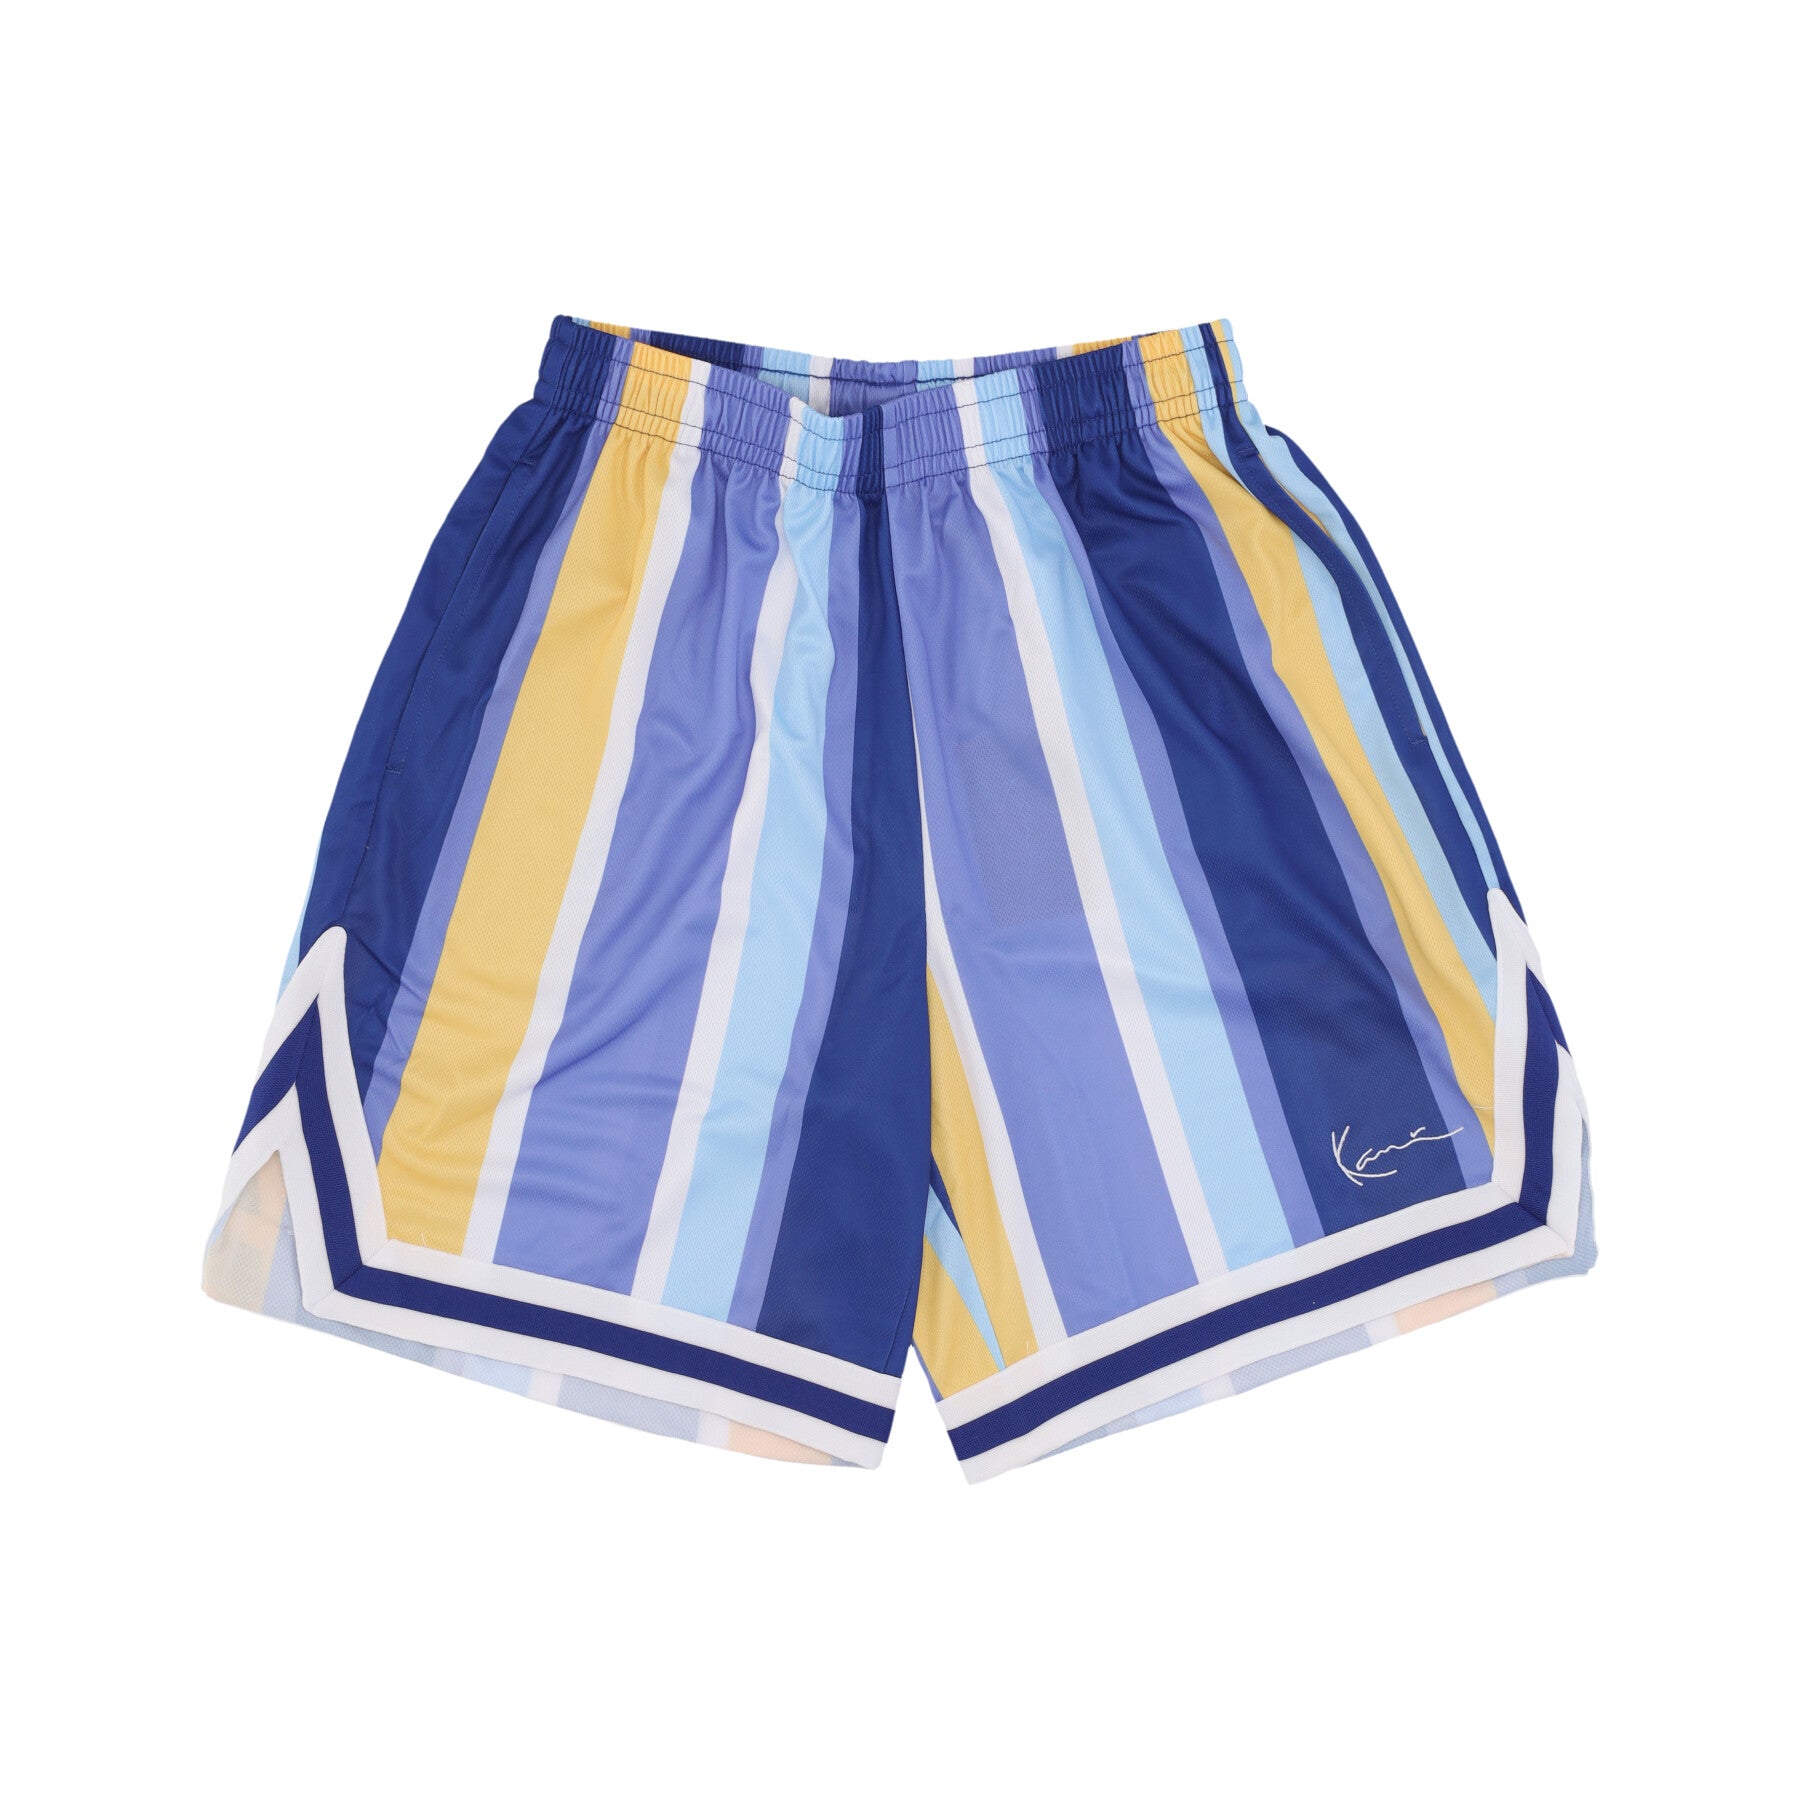 Pantaloncino Tipo Basket Uomo Signature Striped Mesh Shorts Navy/lilac/yellow 6013725